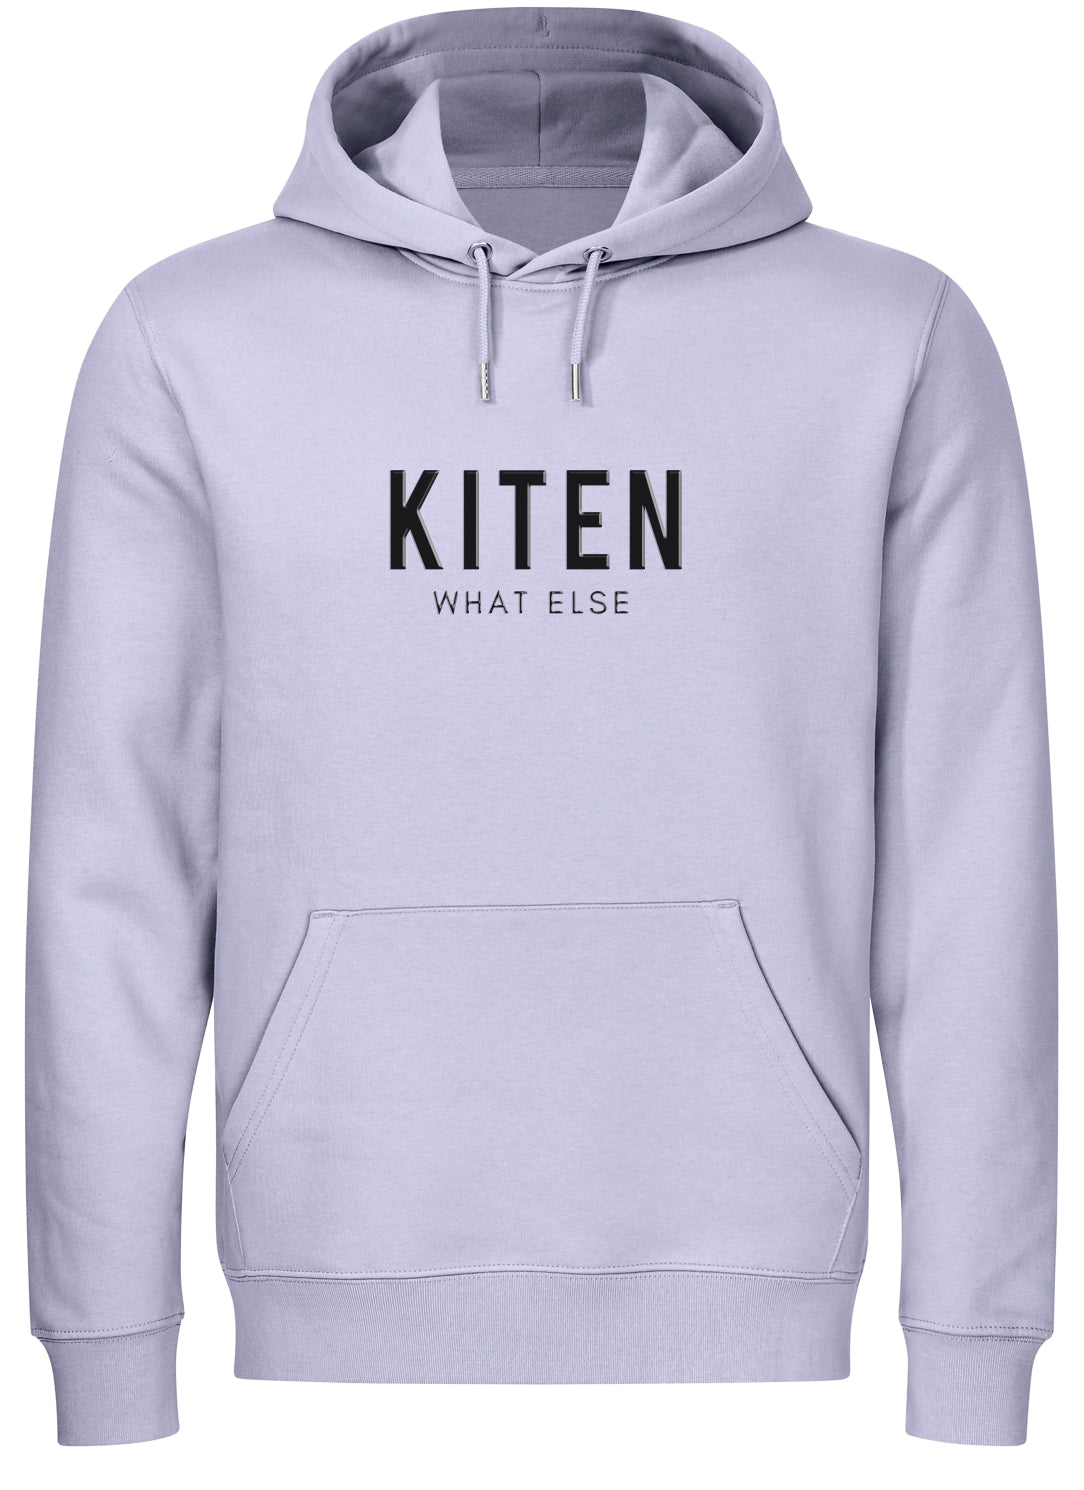 Kiten - What Else (Unisex) Kiten - What Else (Unisex)